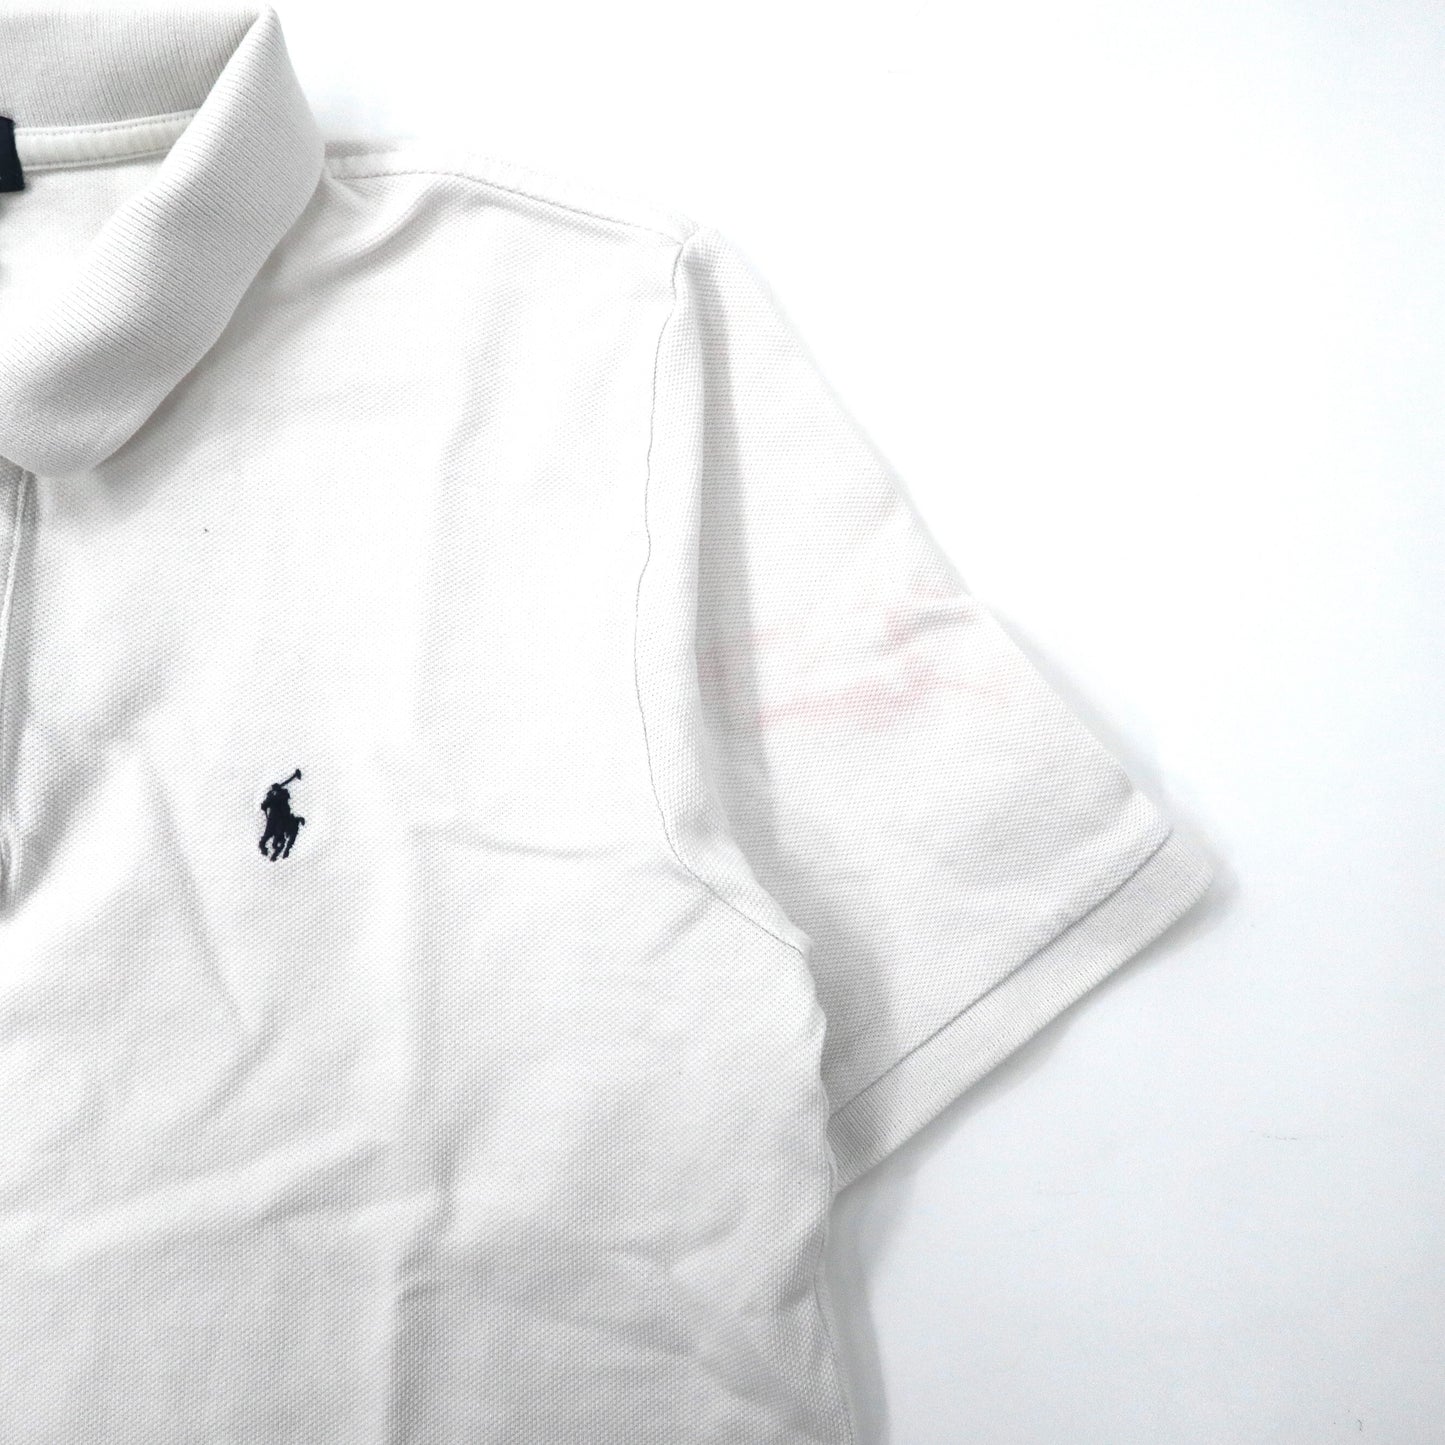 Polo by Ralph Lauren ポロシャツ XL ホワイト コットン スモールポニー刺繍 ペルー製